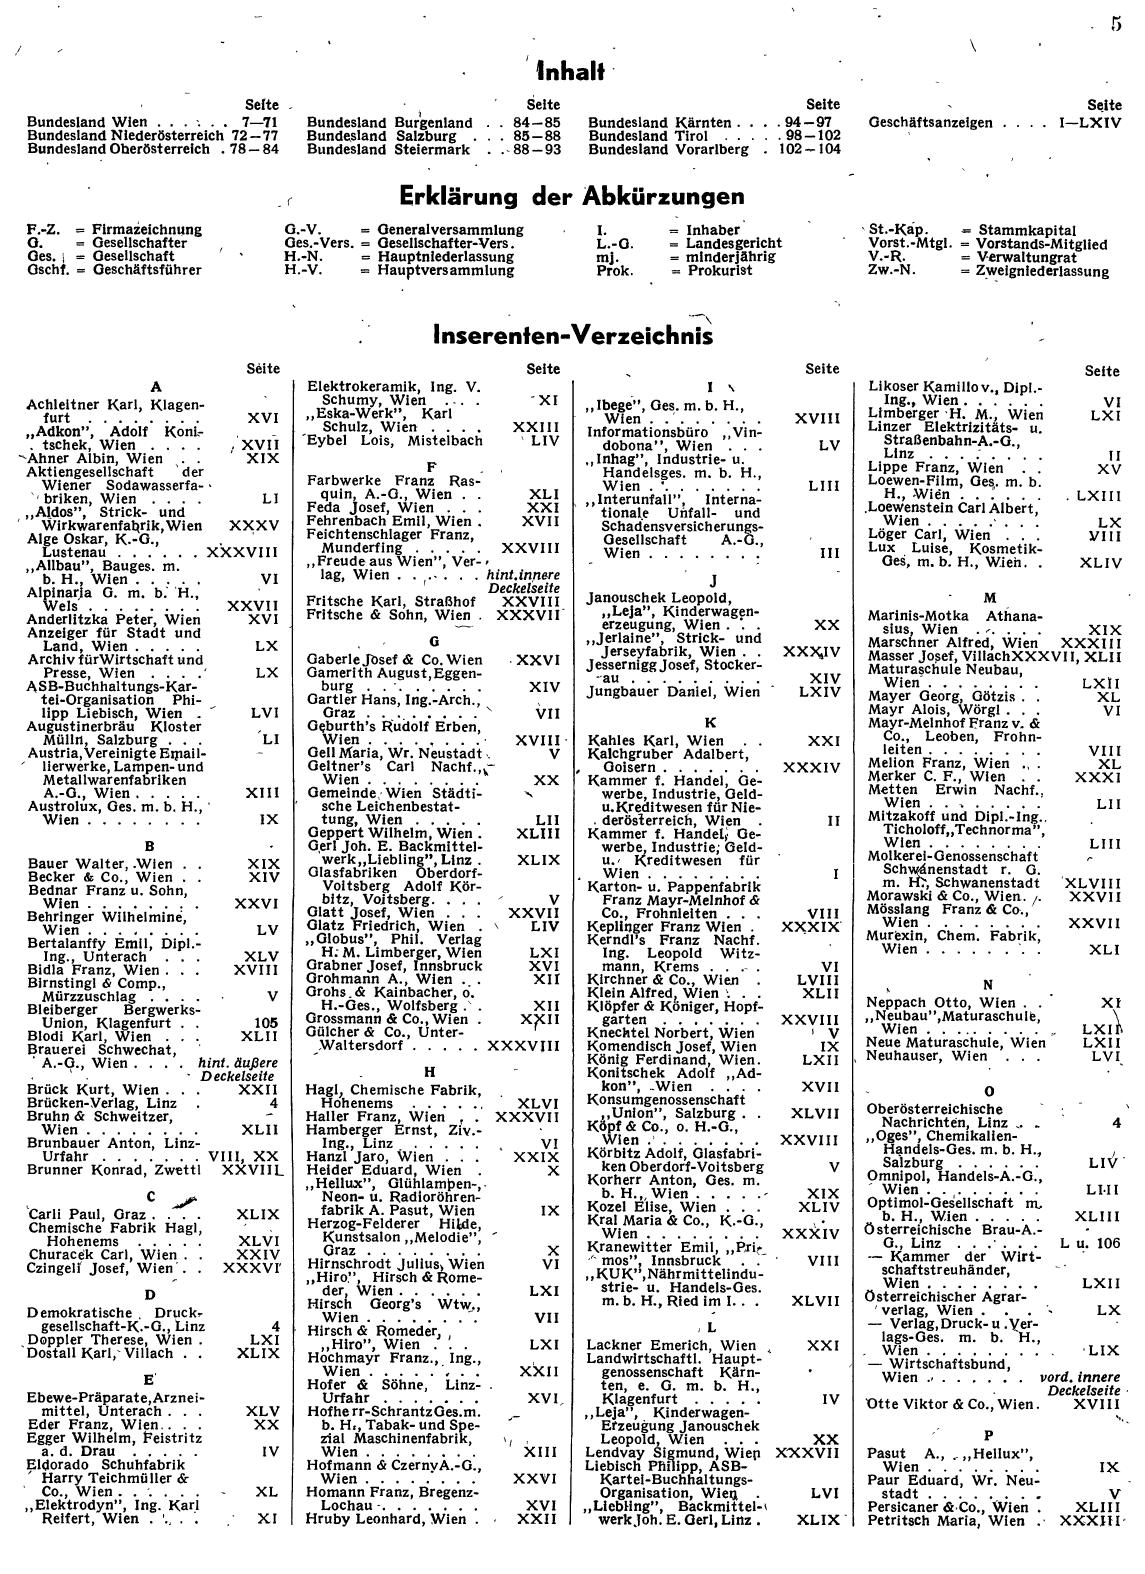 Zentralblatt Geheim 1943-45 - Seite 7